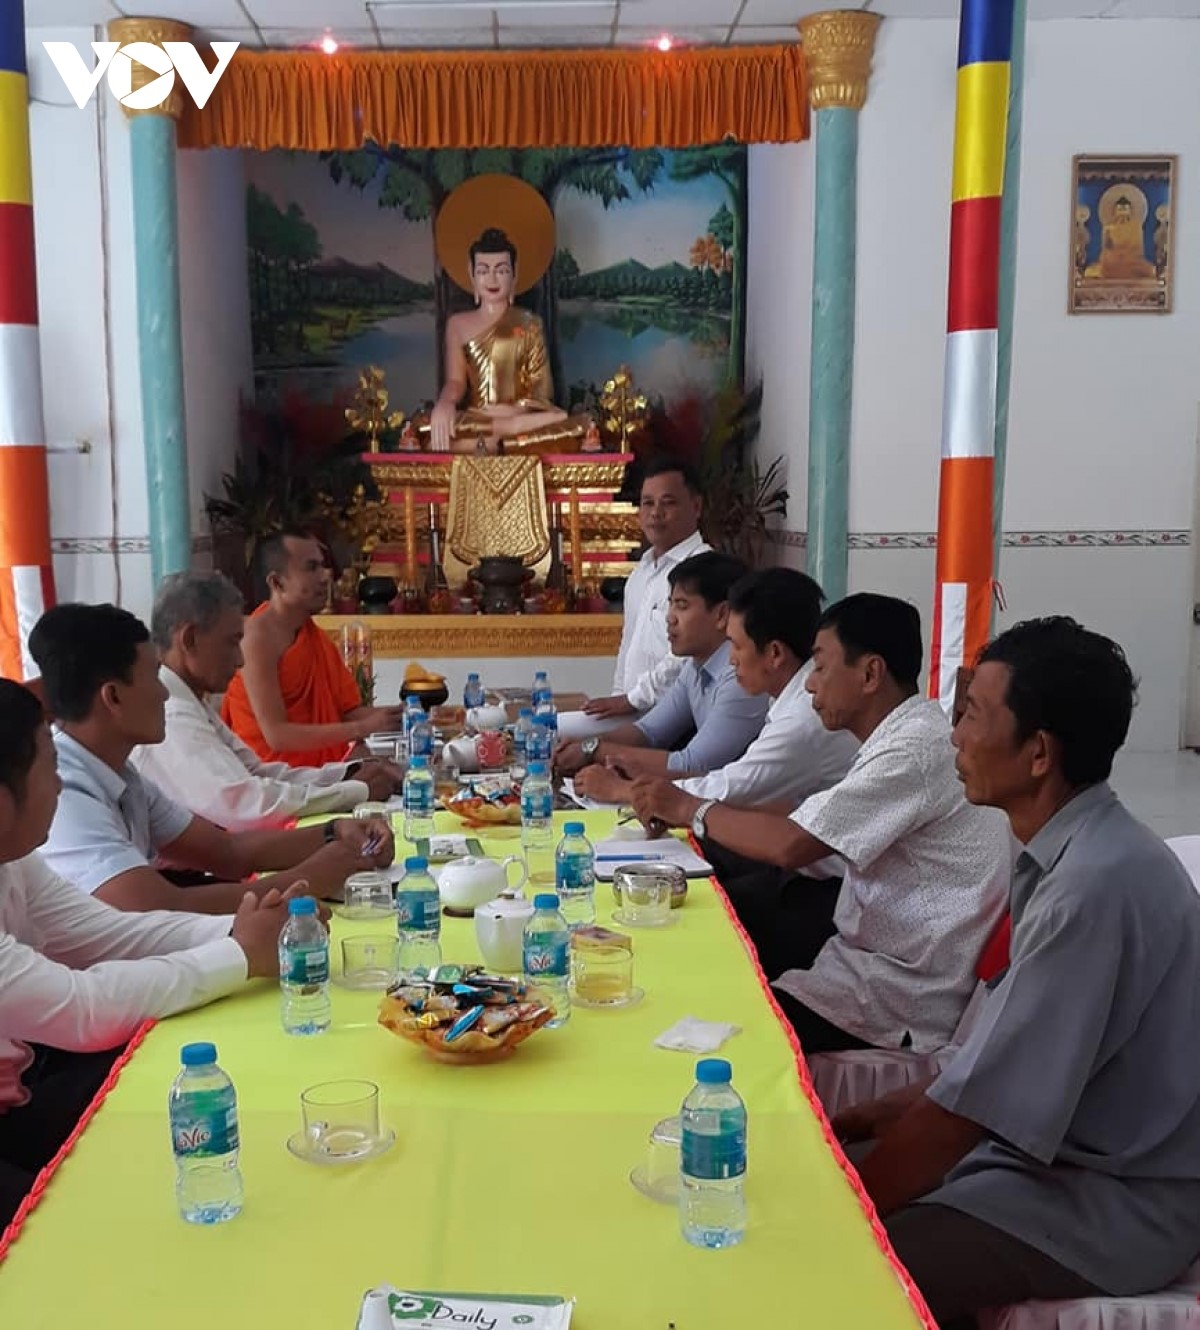 Ban dân tộc tỉnh Vĩnh Long đến thăm chúc mừng lễ Sene Đôn Ta tại chùa Gò Xoài, xã Tân Mỹ, huyện Trà Ôn, tỉnh Vĩnh Long.